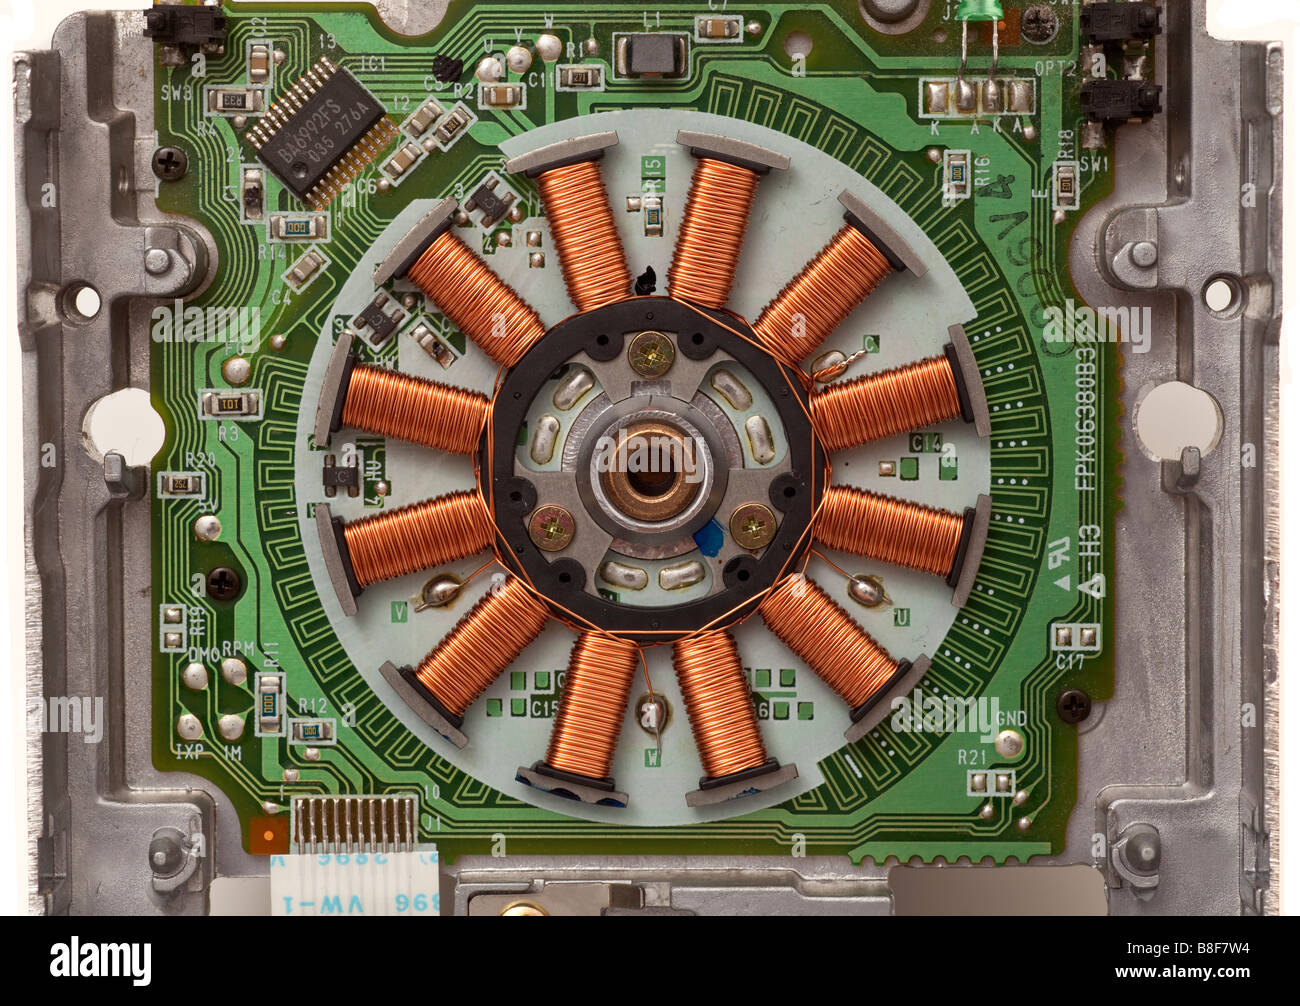 Elektromotor Kupfer Spule Wicklungen wie in einem Computer-floppy-Laufwerk gefunden Stockfoto